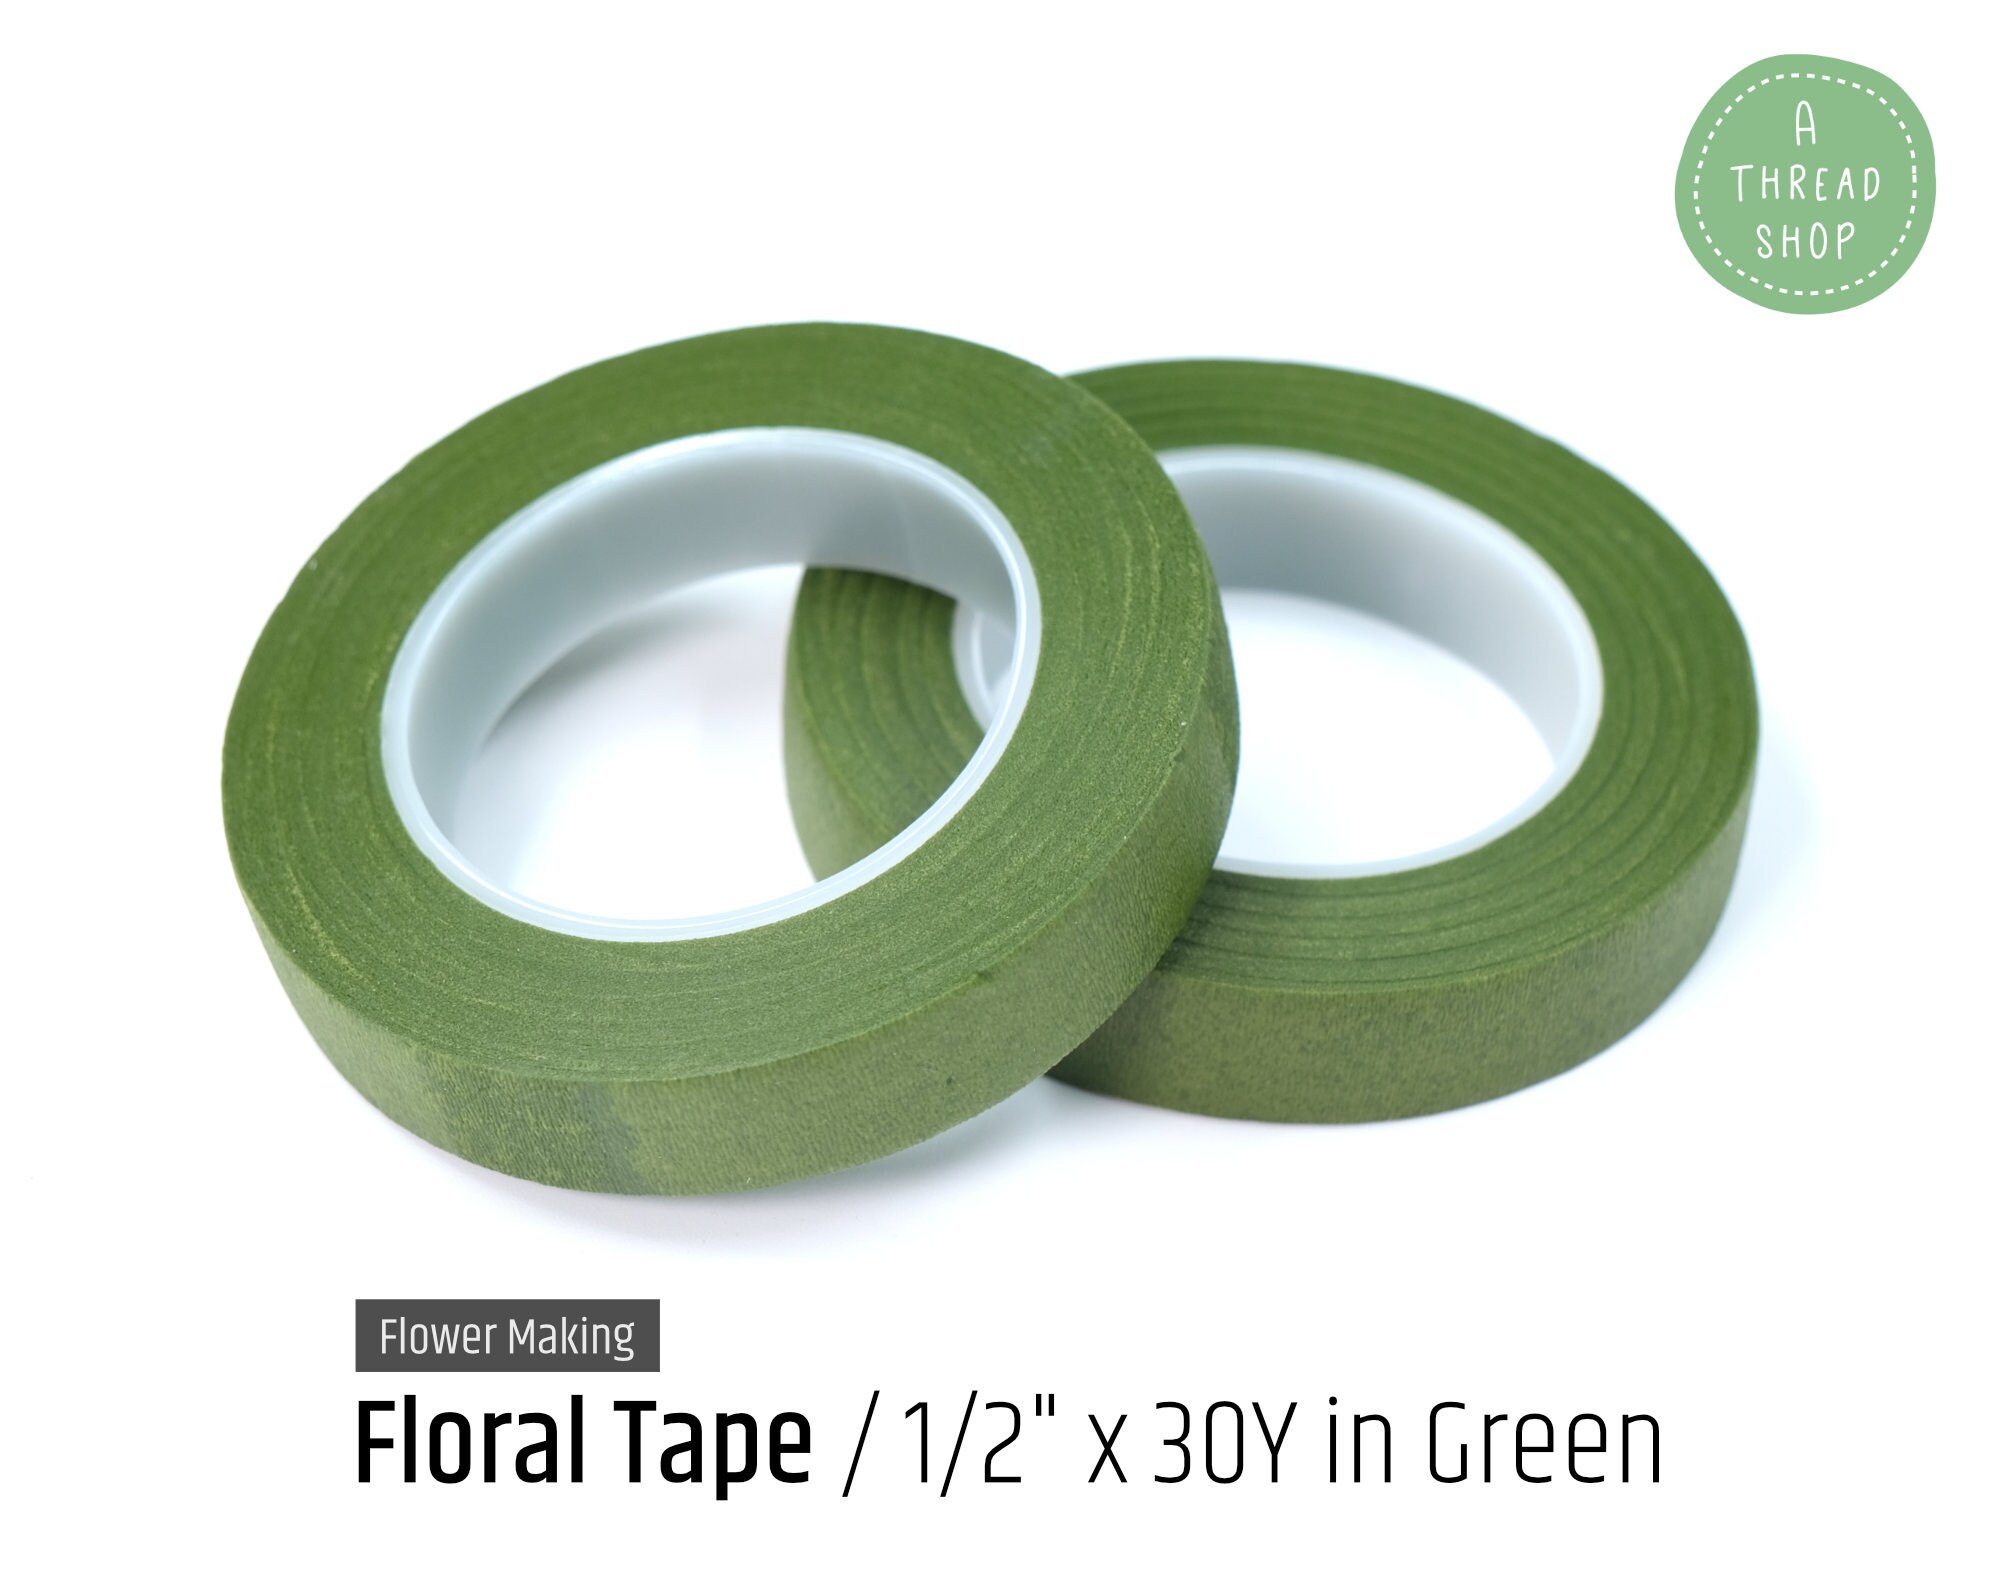 1/2 X 30 Yard Light Green Floral Tape Flower Marking Supplies 